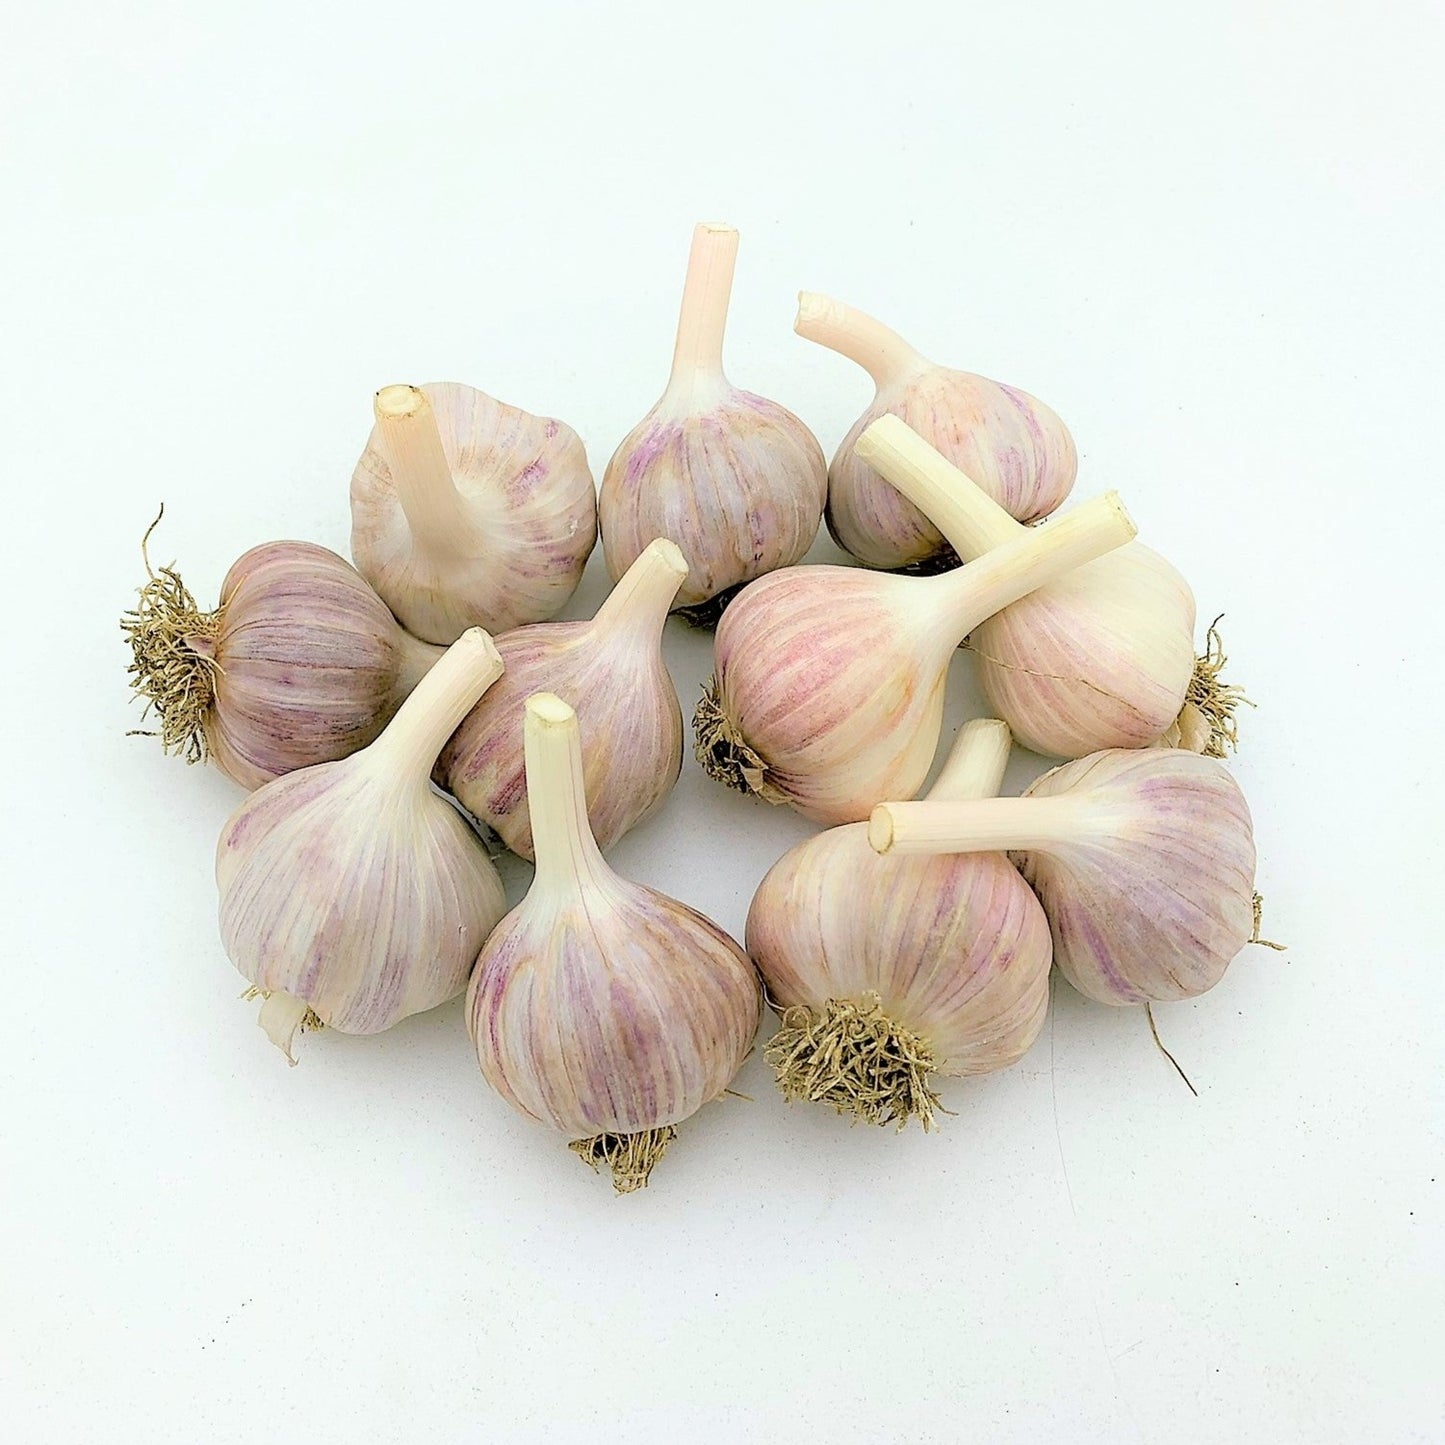 Music Garlic Medium (1.25-2.0 inch) - Count Von Garlic